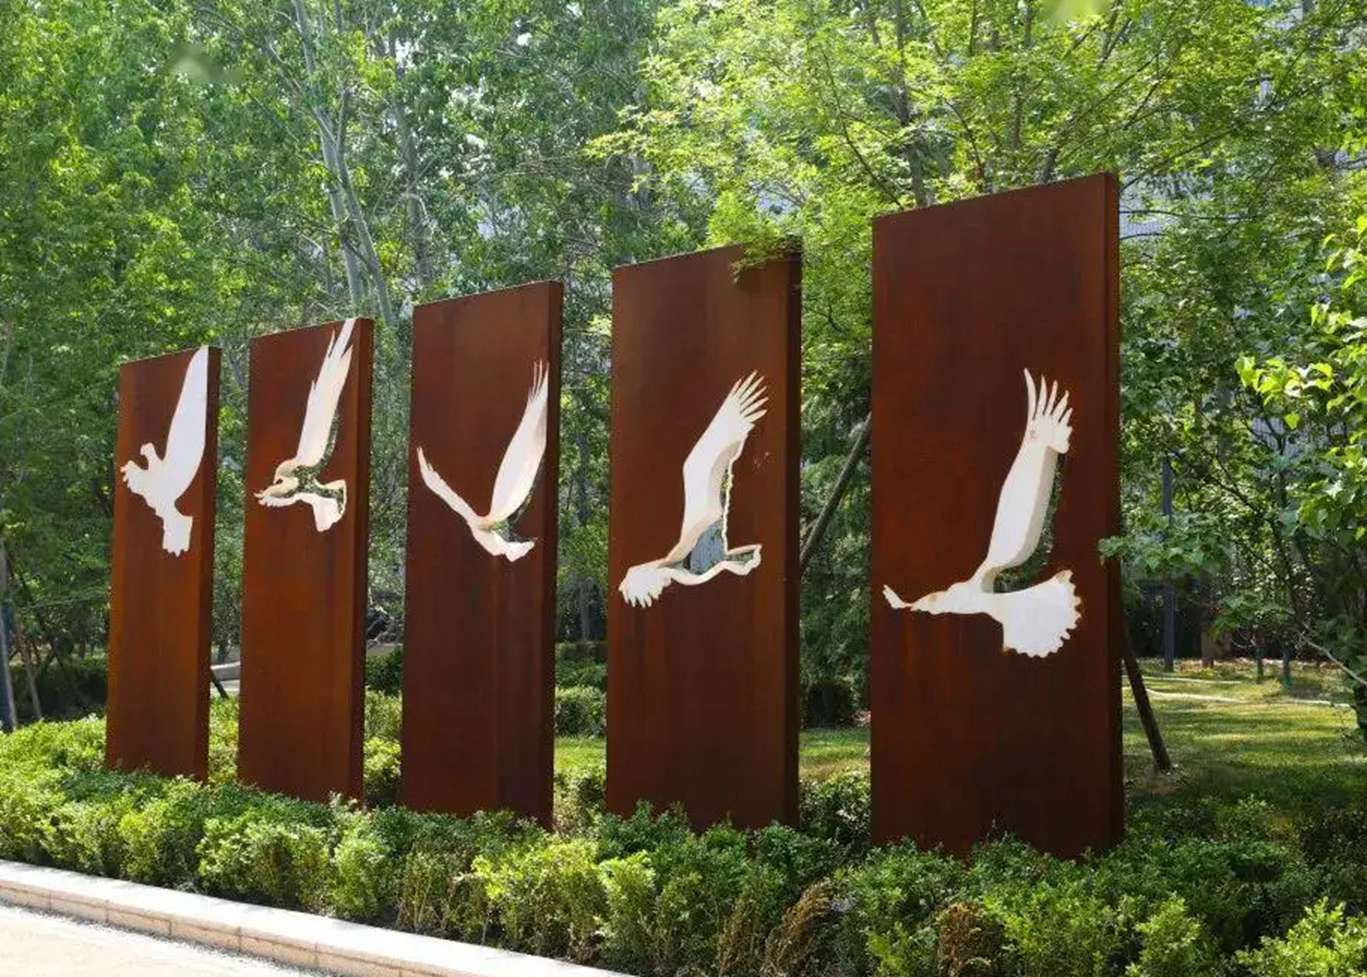 garden wall bird Corten steel relief sculpture